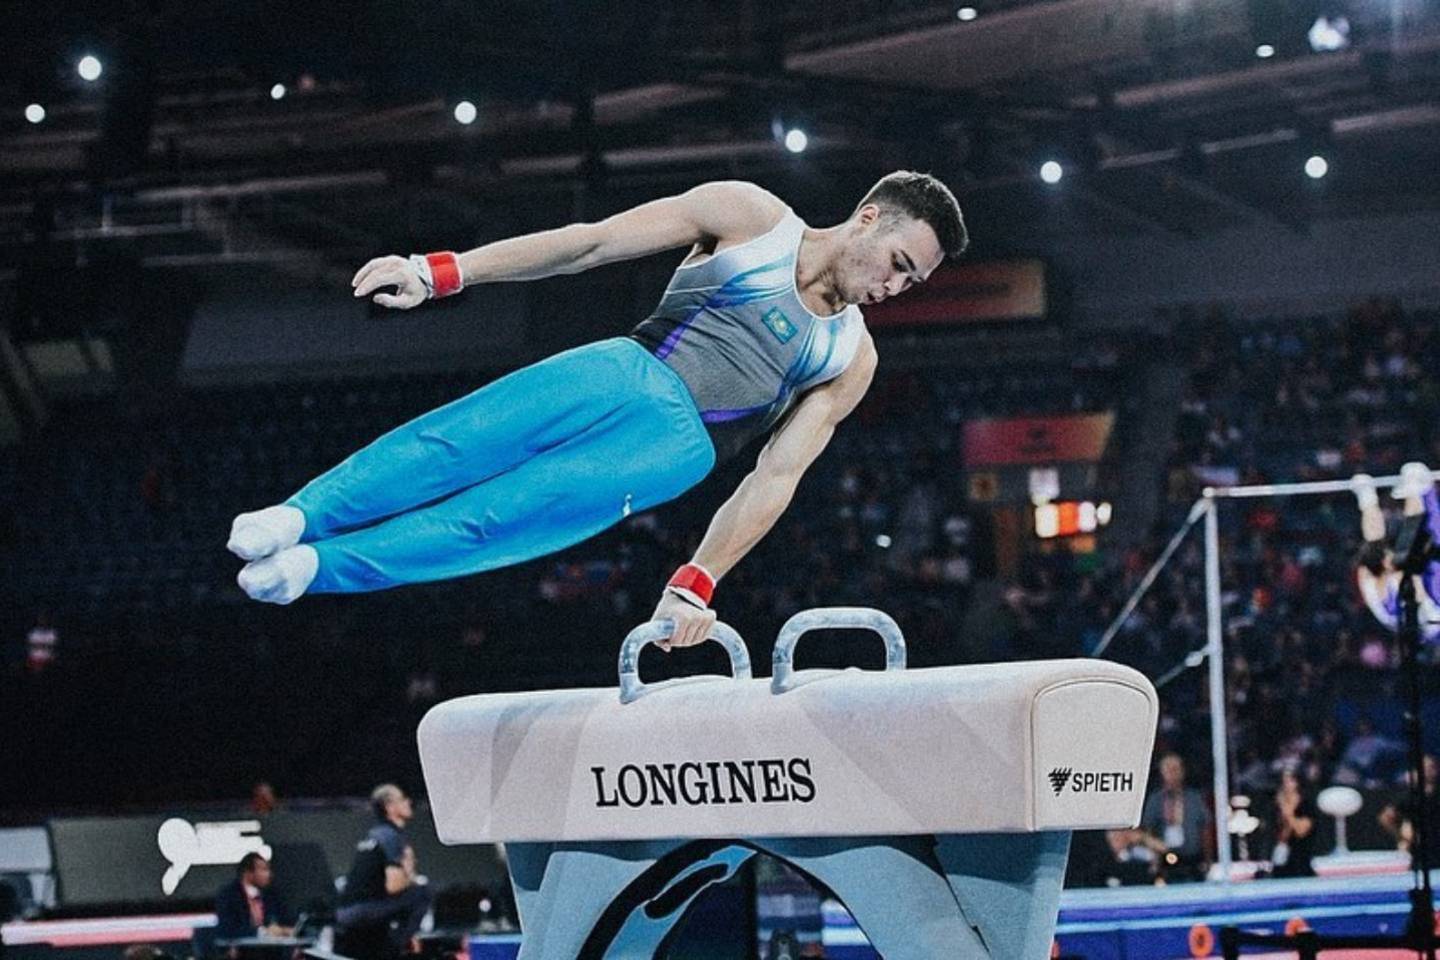 Новости спорта / Новости спорта в мире и Казахстане / Казахстанский гимнаст завоевал третье место на этапе Кубке Мира